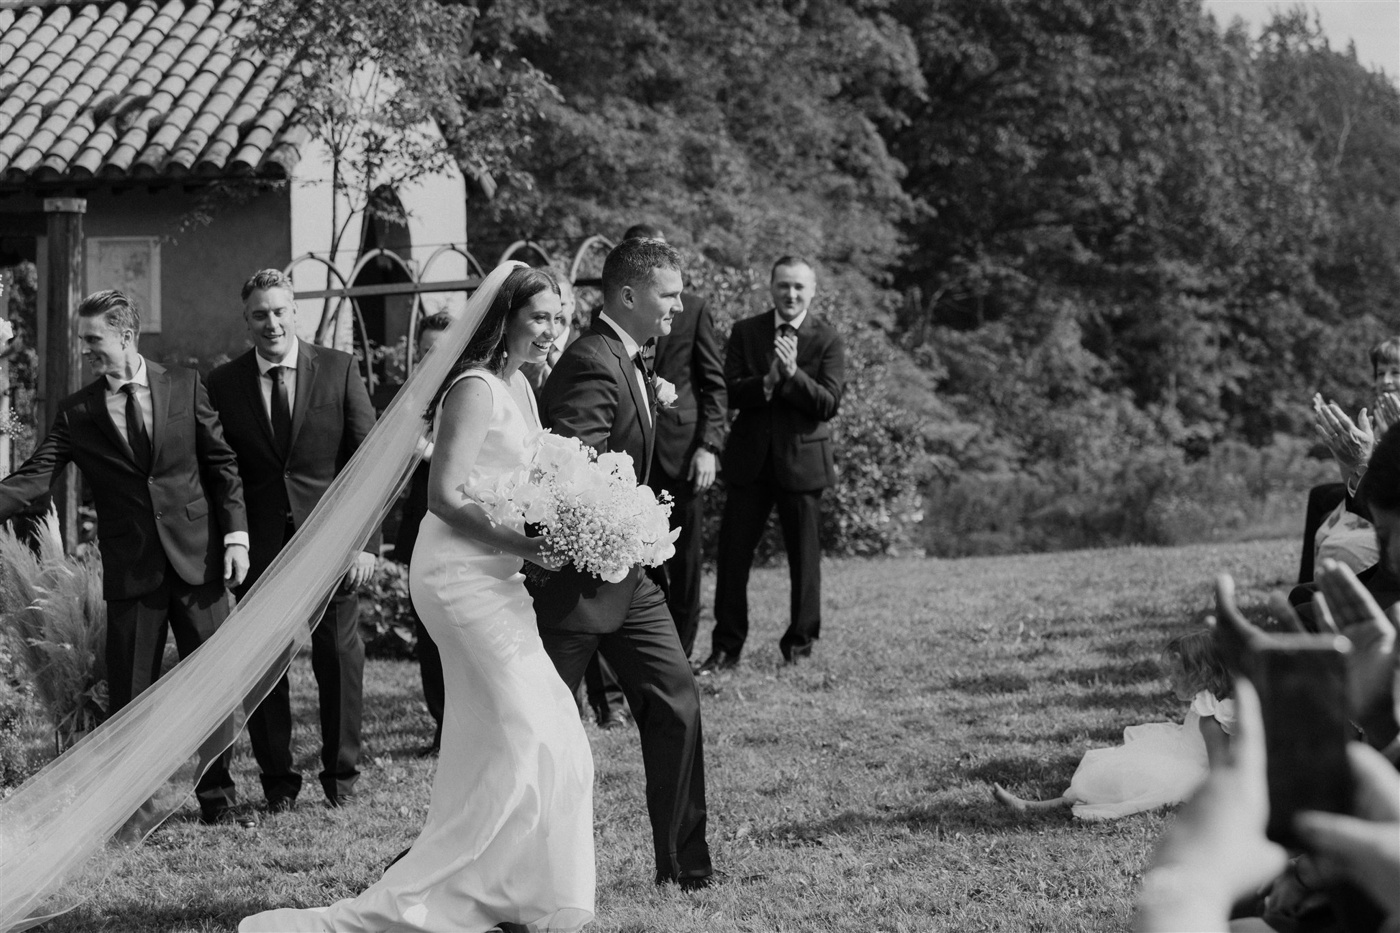 Outdoor wedding ceremony at Aldworth Manor